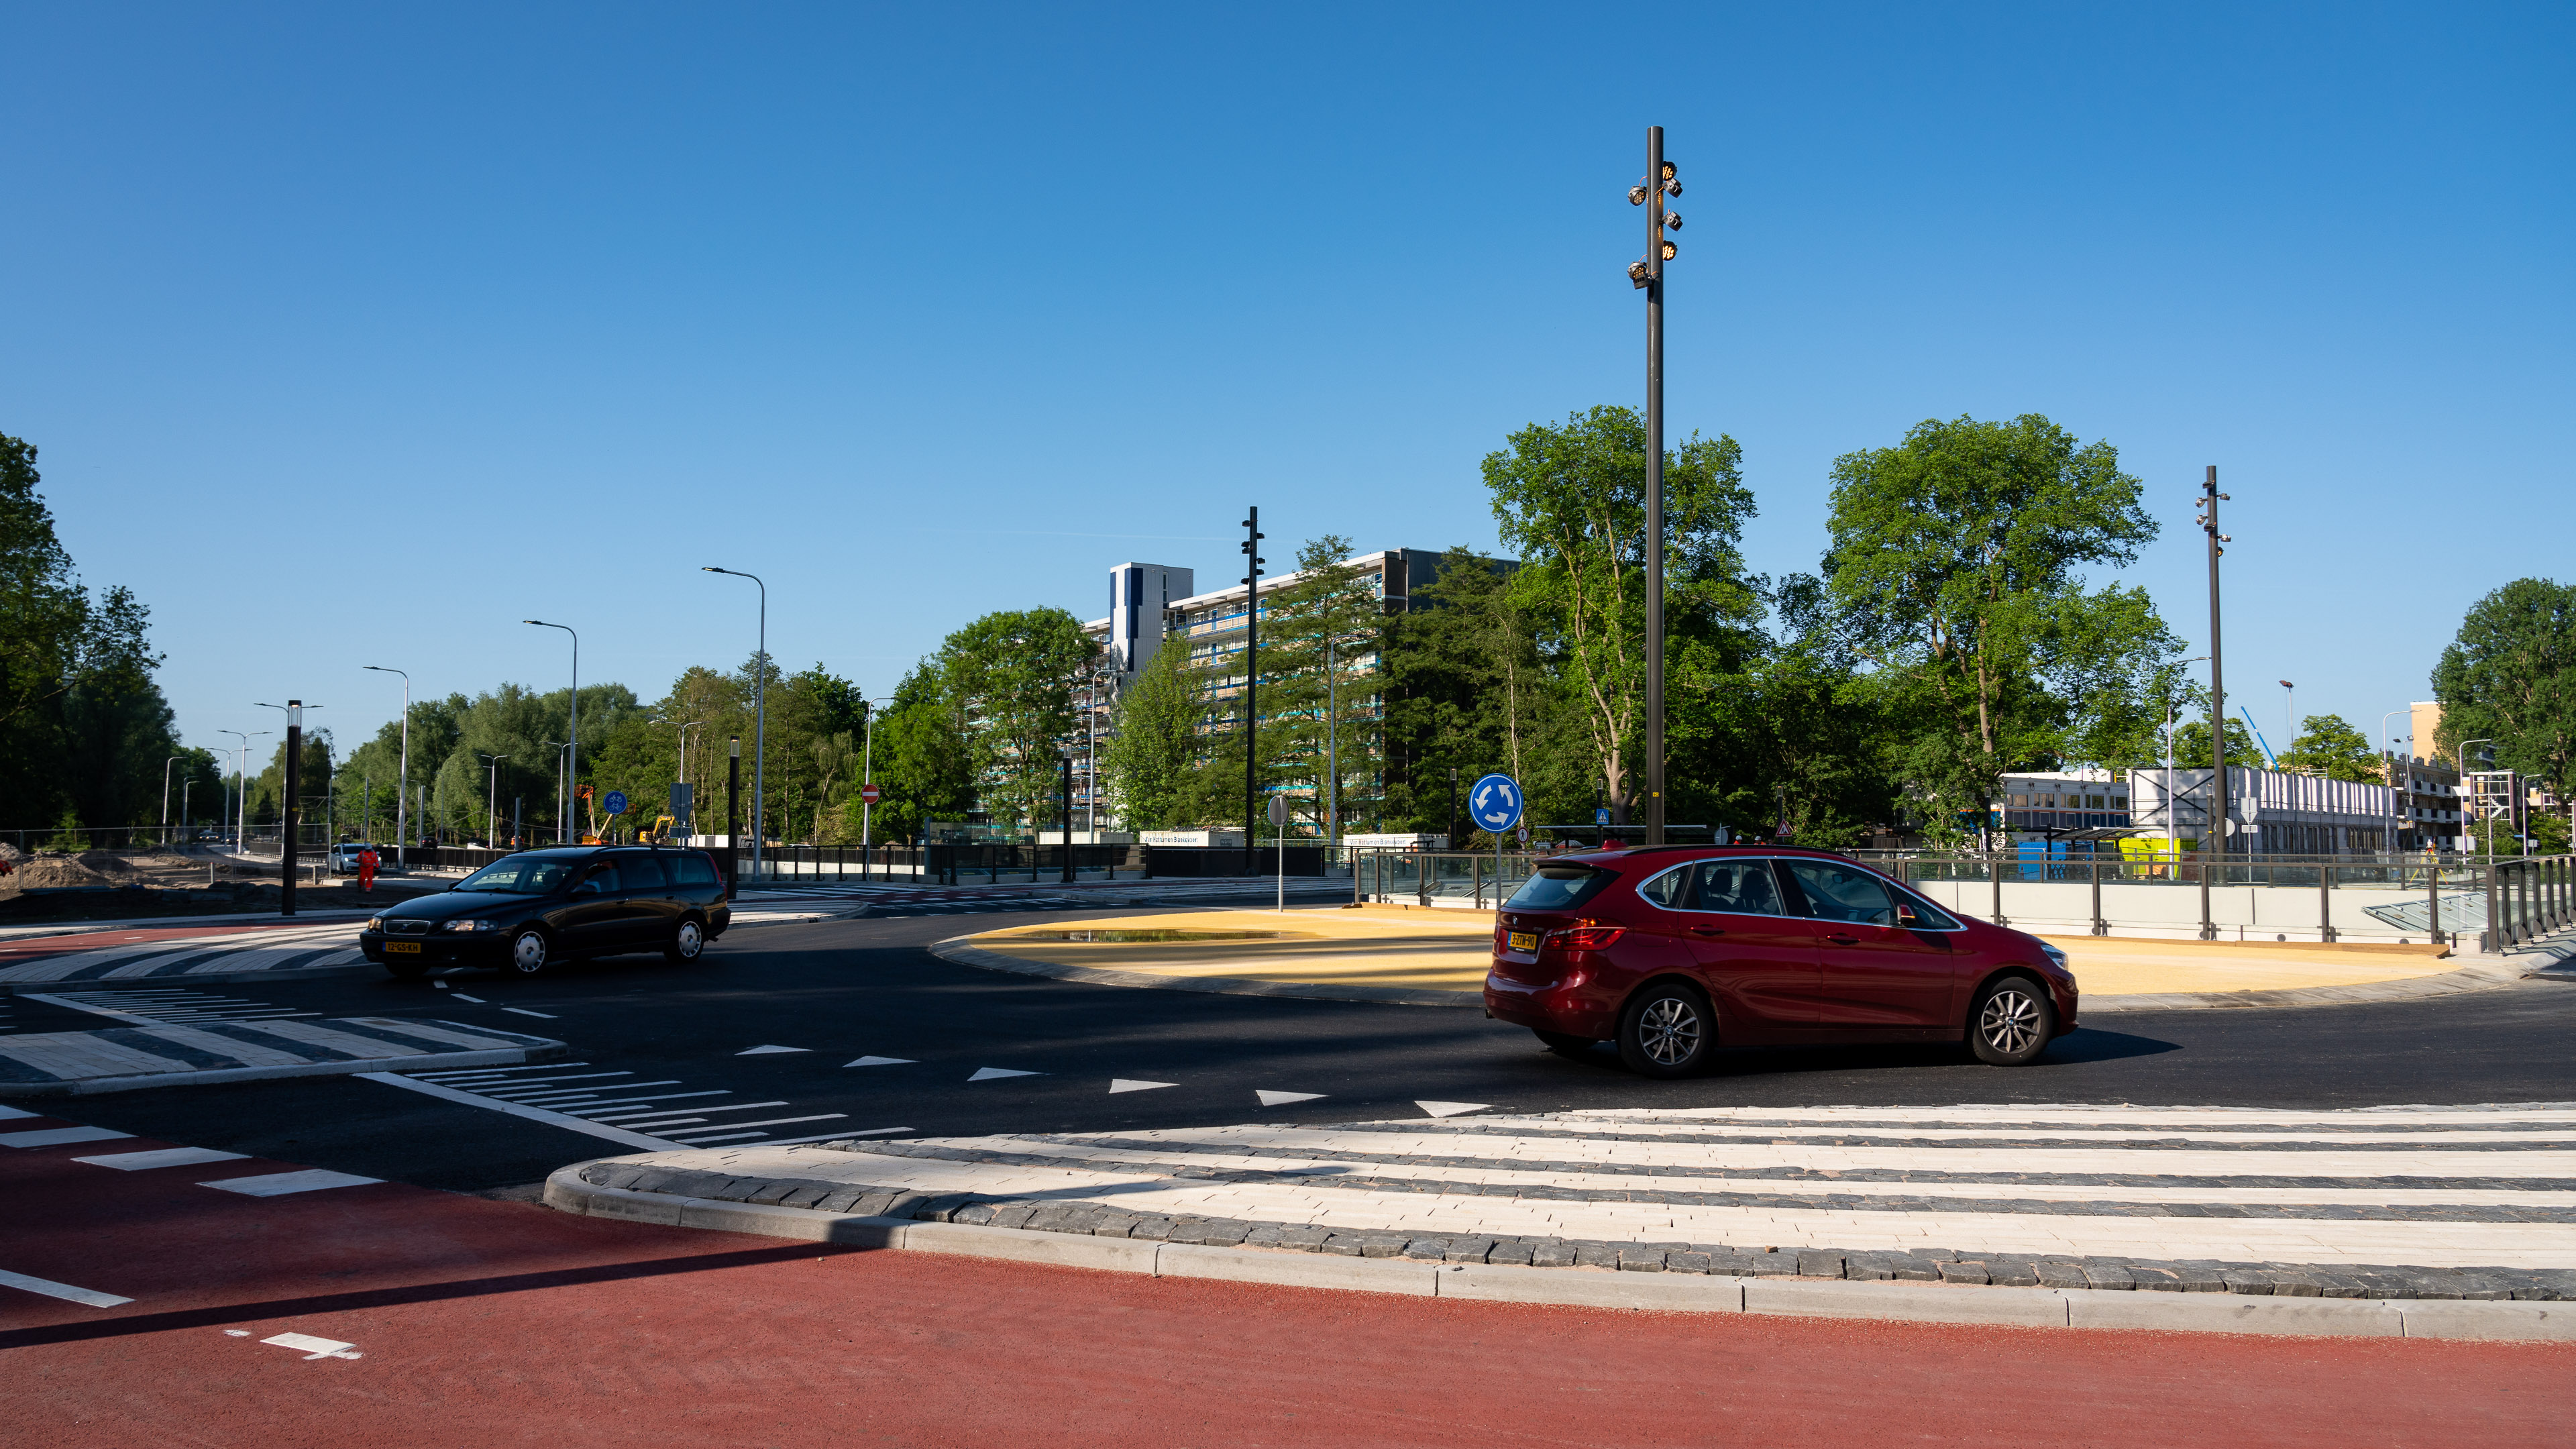 Weg zijn de verkeerslichten. Auto's maken gebruik van de nieuwe rotonde. Fietsers en voetgangers hebben hier voorrang.  